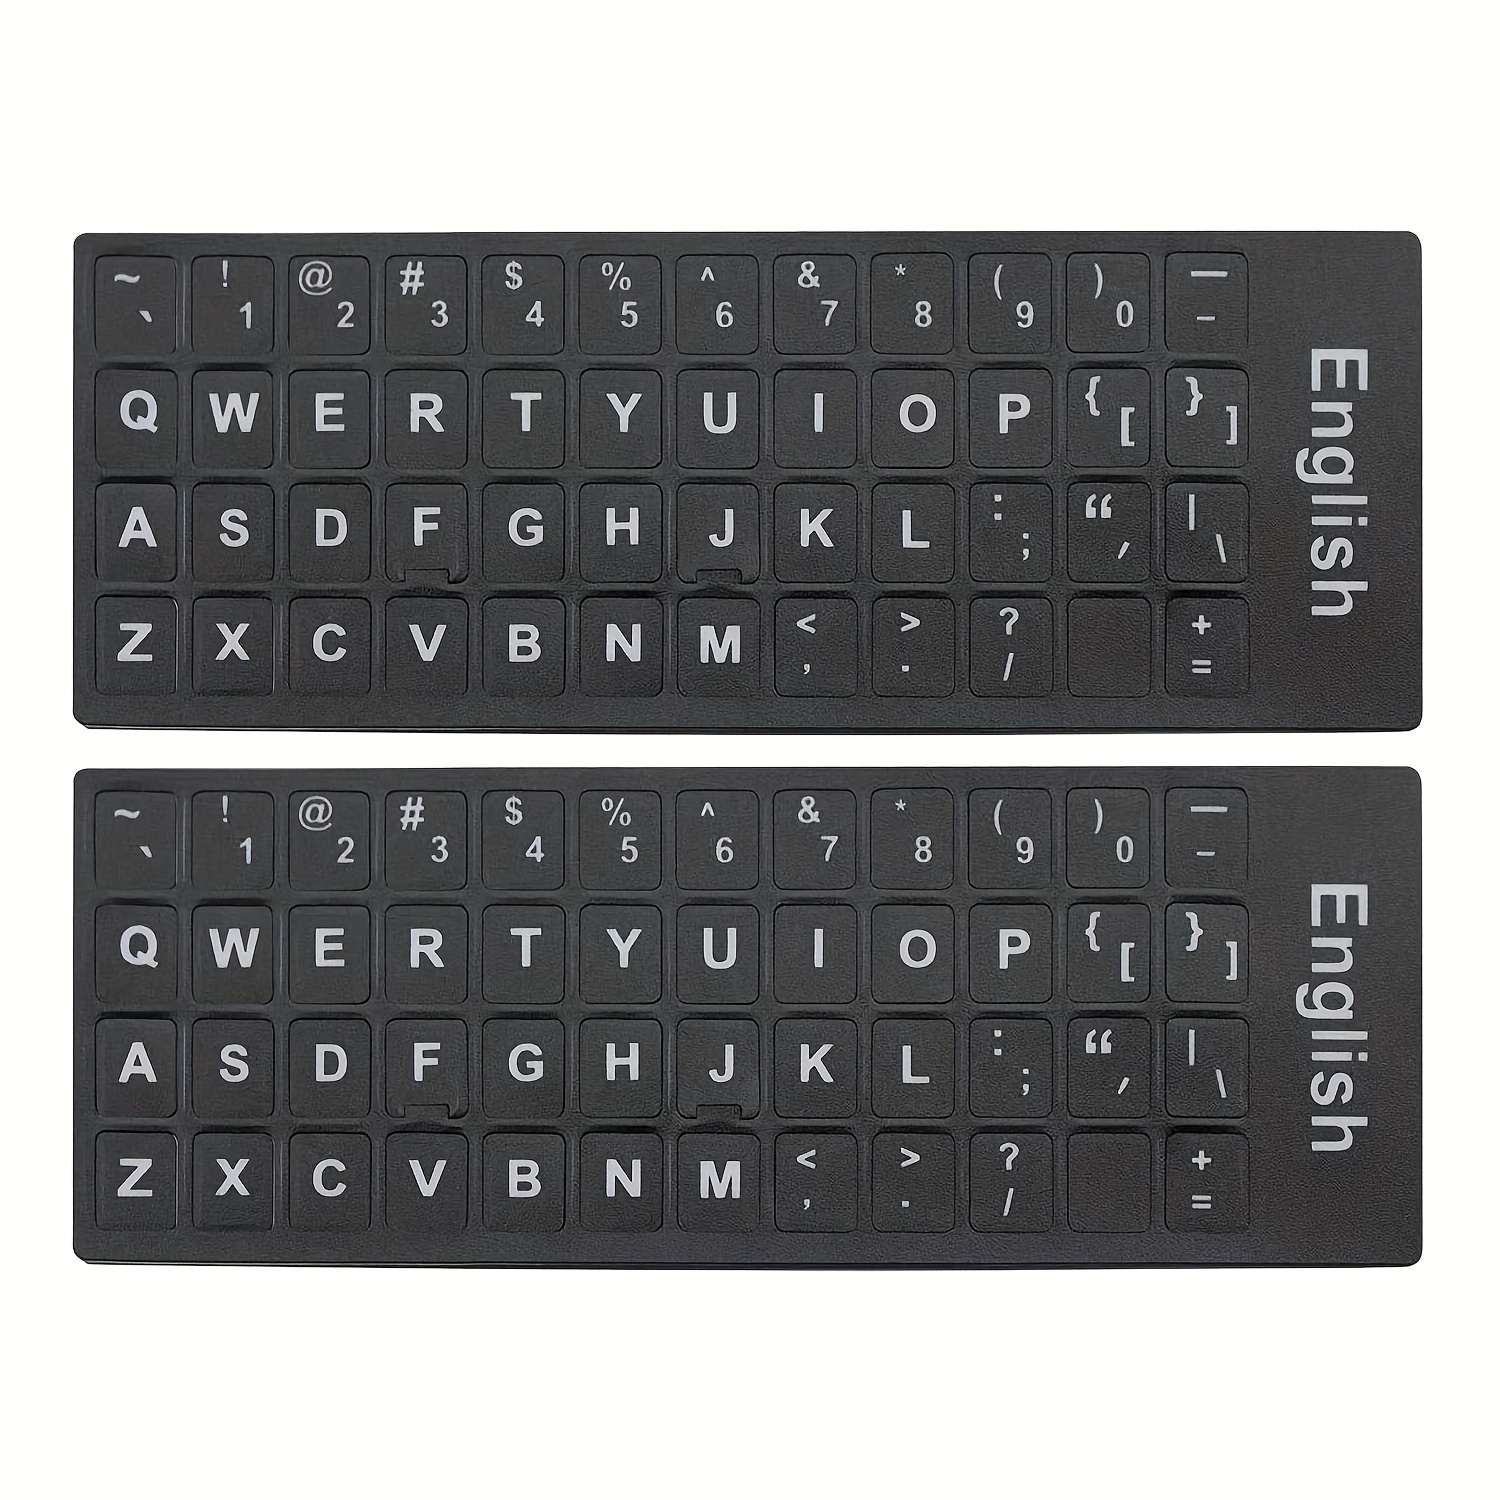 2pcs/set Pegatinas para teclado de PC, Pegatinas universales para teclado  en inglés con fondo negro y letras grandes en blanco para computadora portát